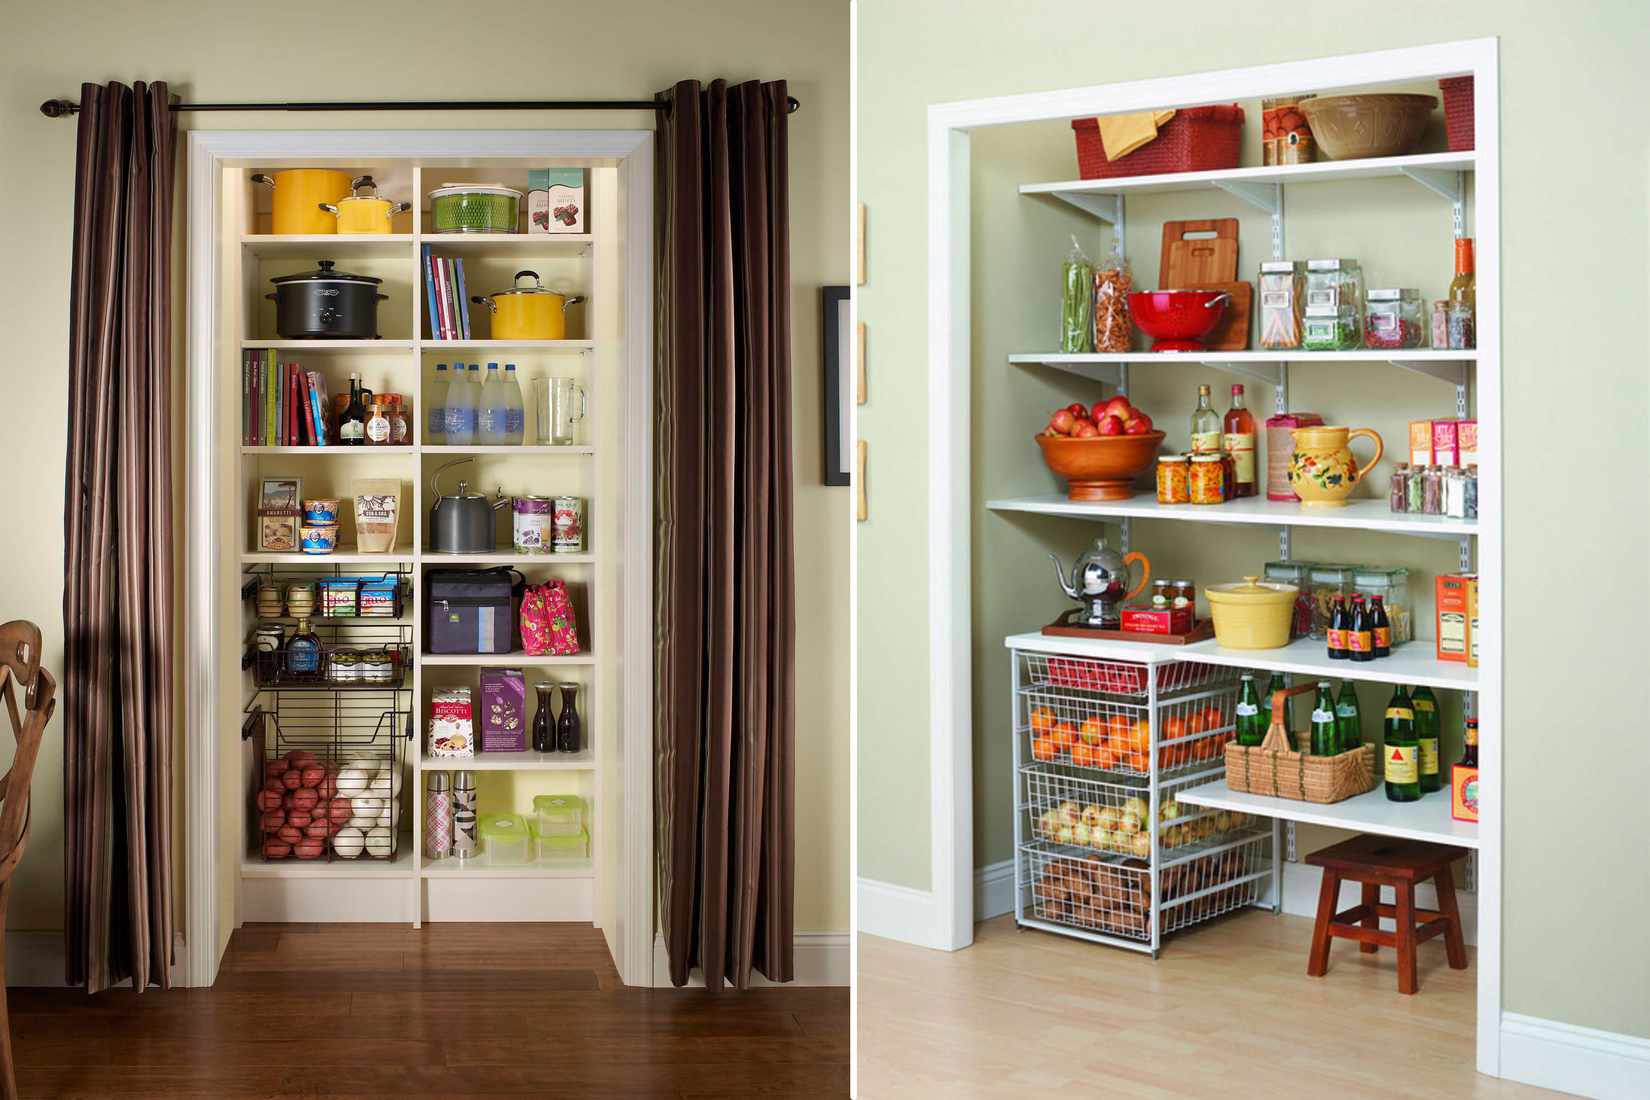 فضای ذخیره سازی آشپزخانه را در یک اتاق مجاور ایجاد کنید